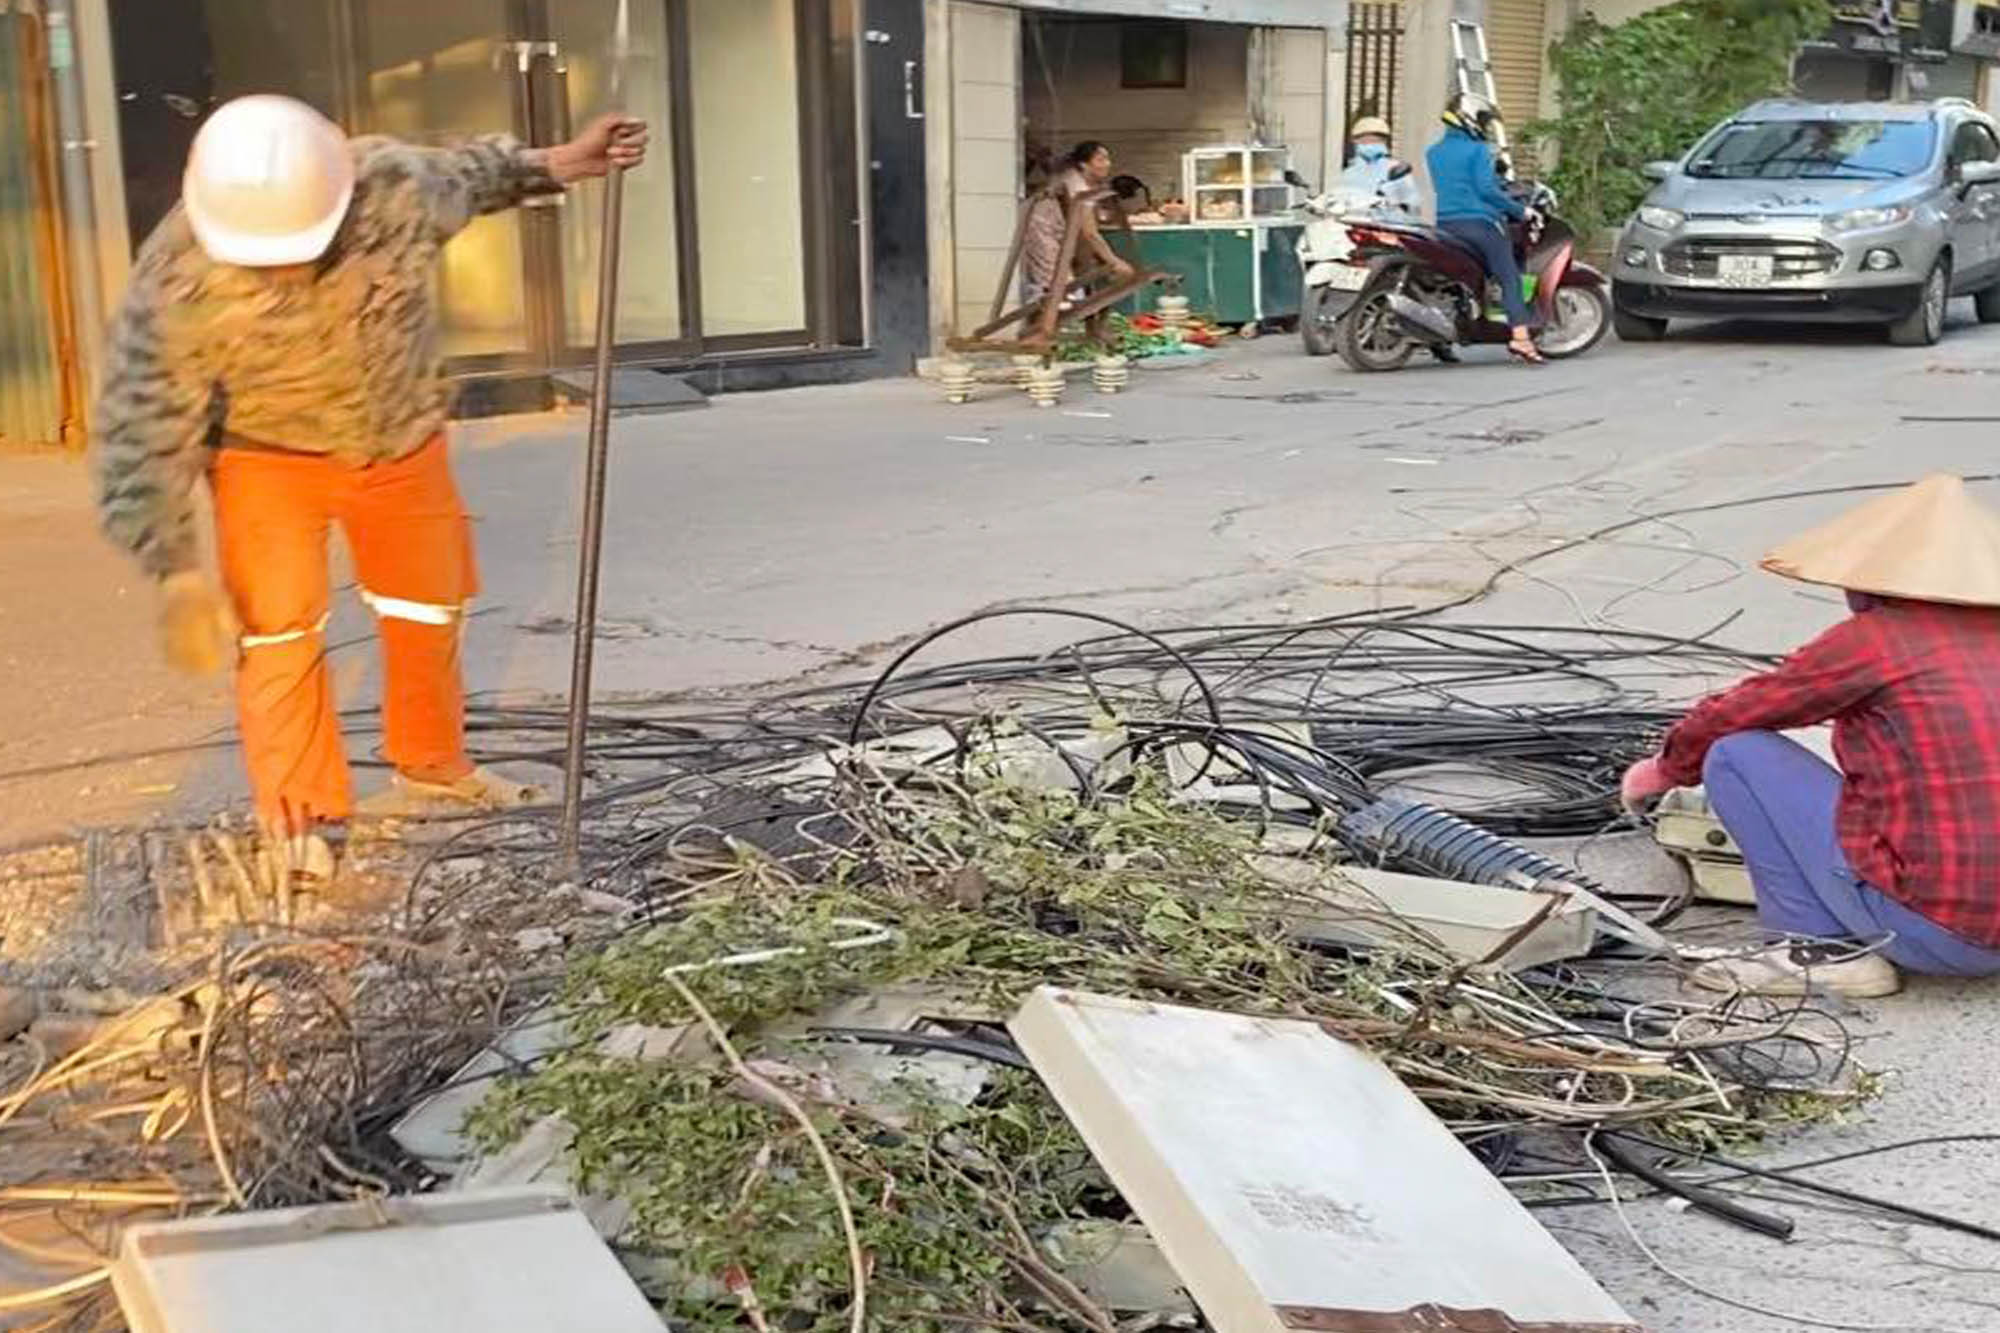 Hà Nội dỡ cột điện ngáng đường dân sau phản ánh của VietNamNet